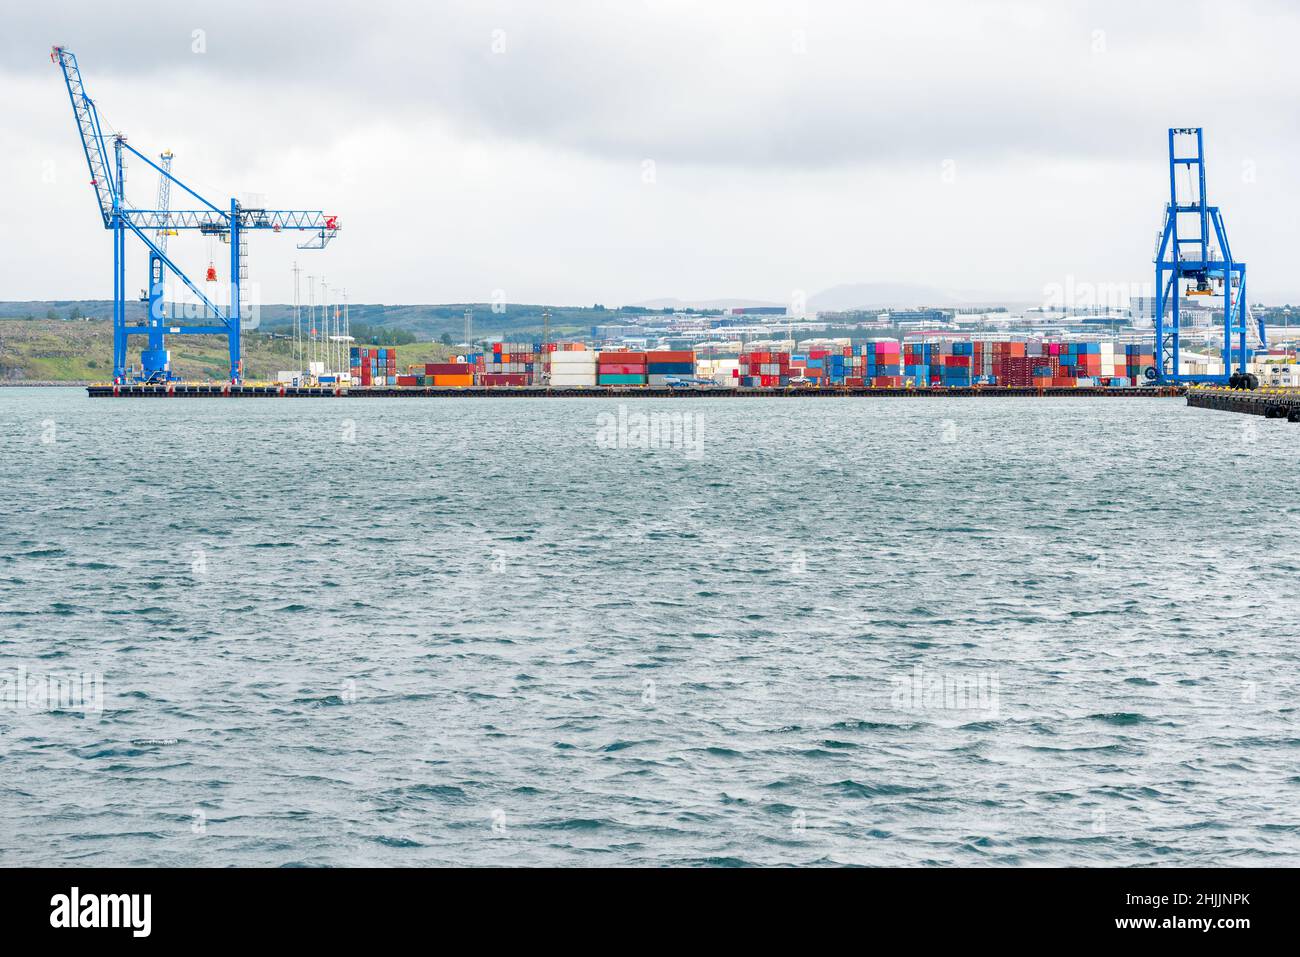 Farbenfrohe Container an einem Pier in einem verlassenen Handelshafen an einem bewölkten Tag Stockfoto